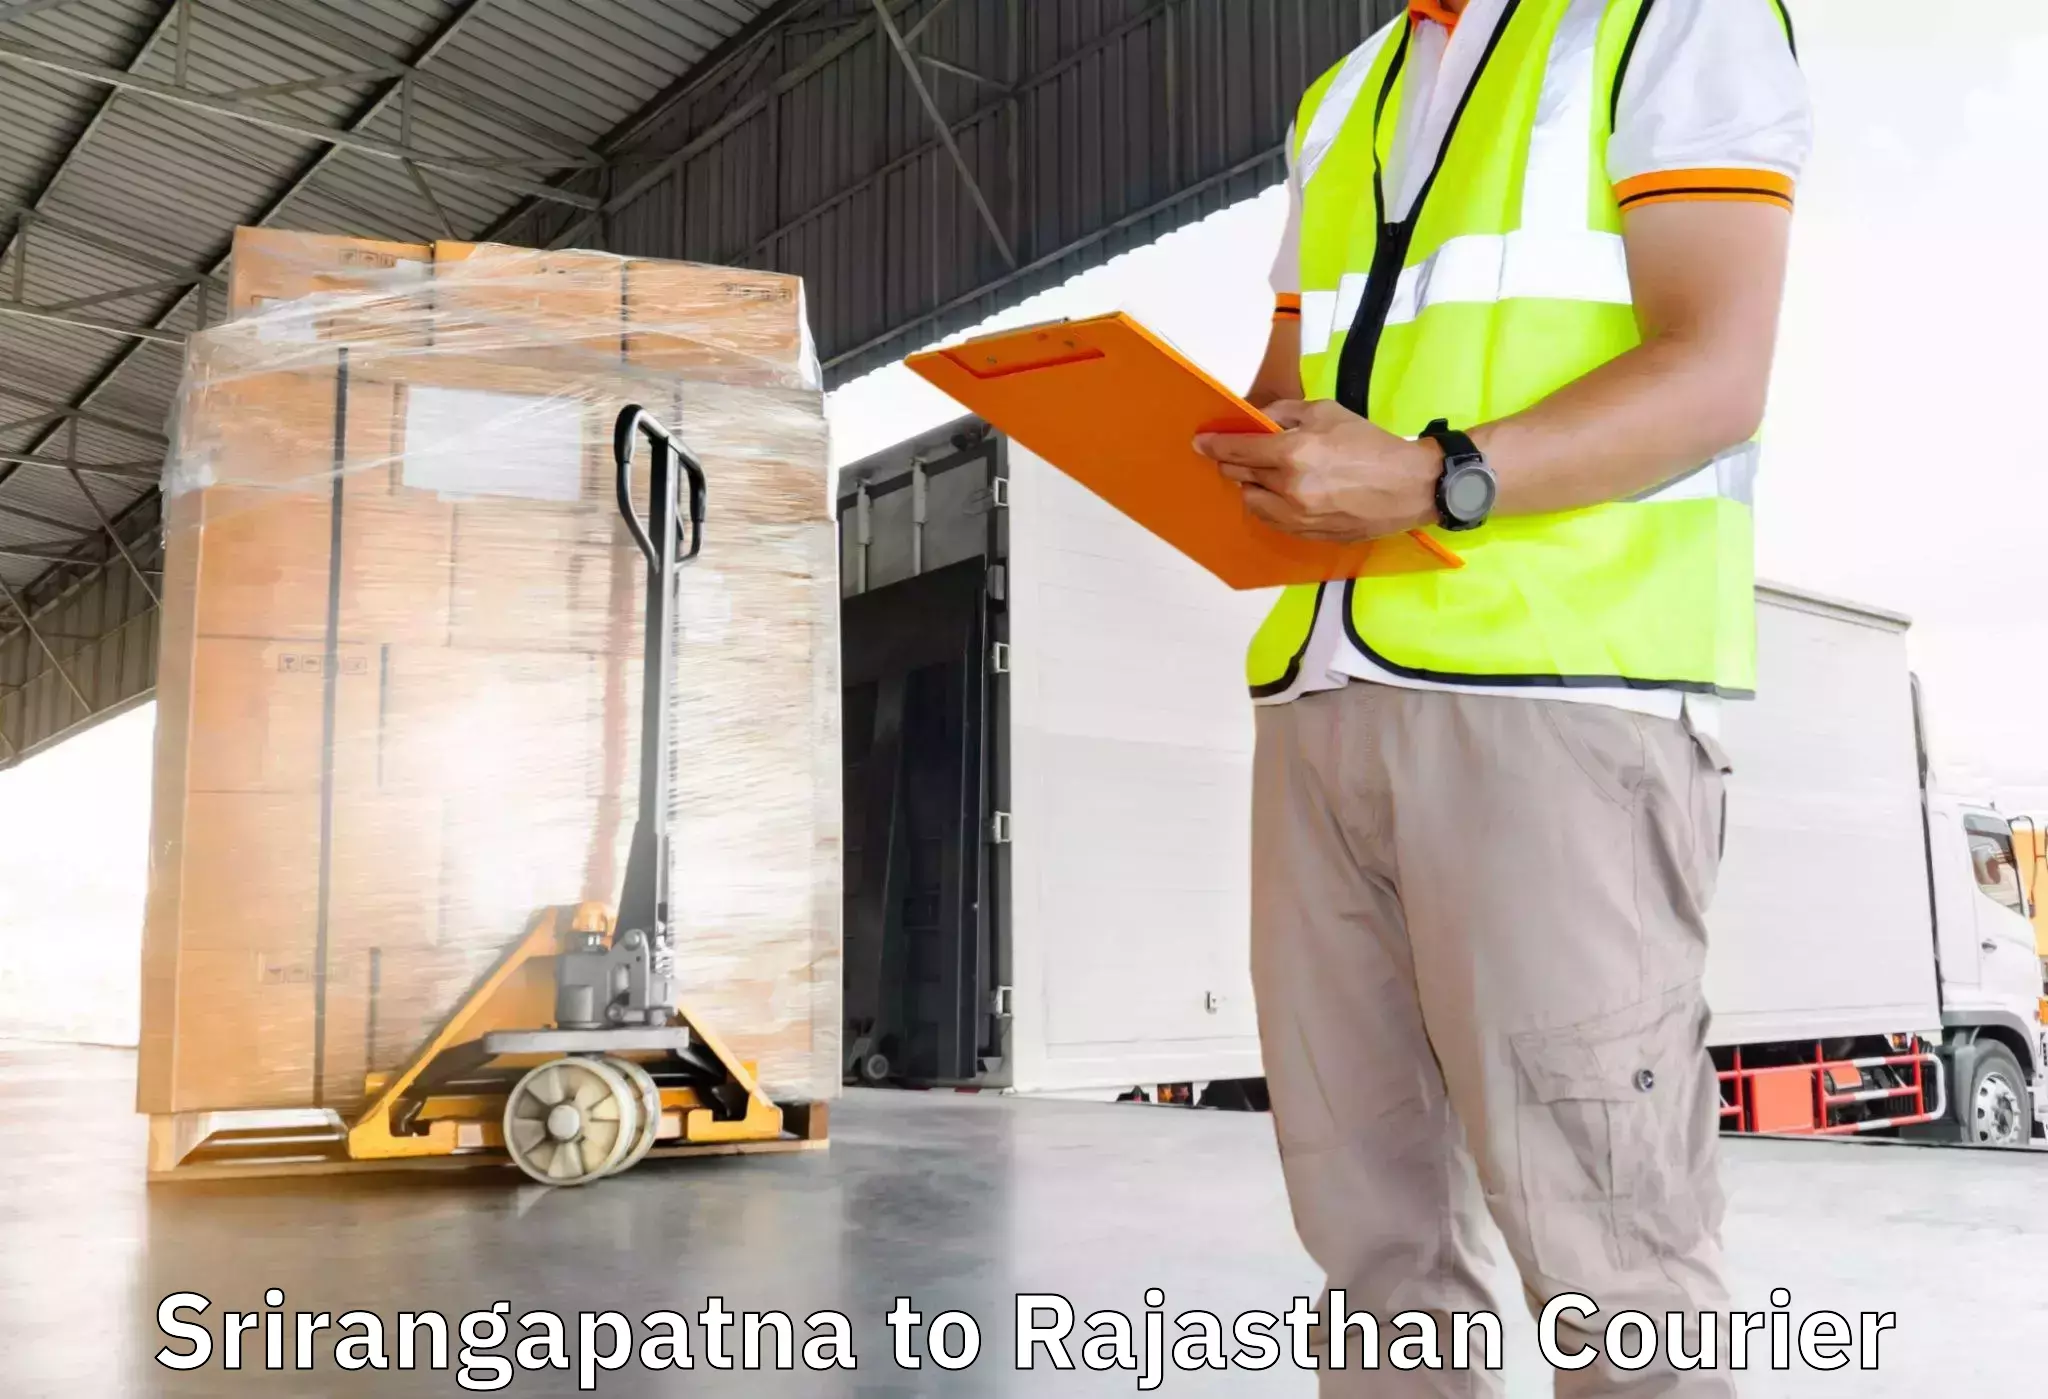 Furniture moving service Srirangapatna to Sri Vijaynagar